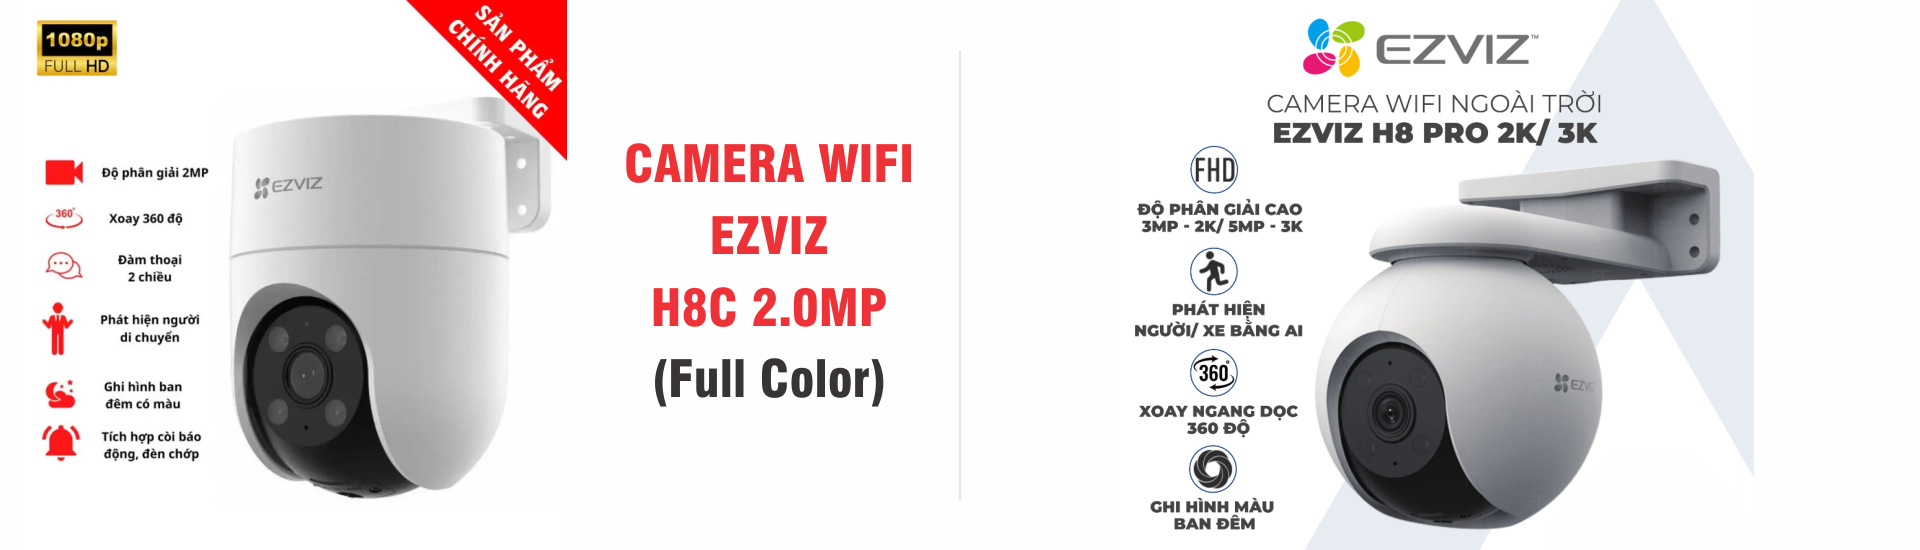 Camera Wifi  ngoài trời EZVIZ H8C - H8 Pro 2K/3K